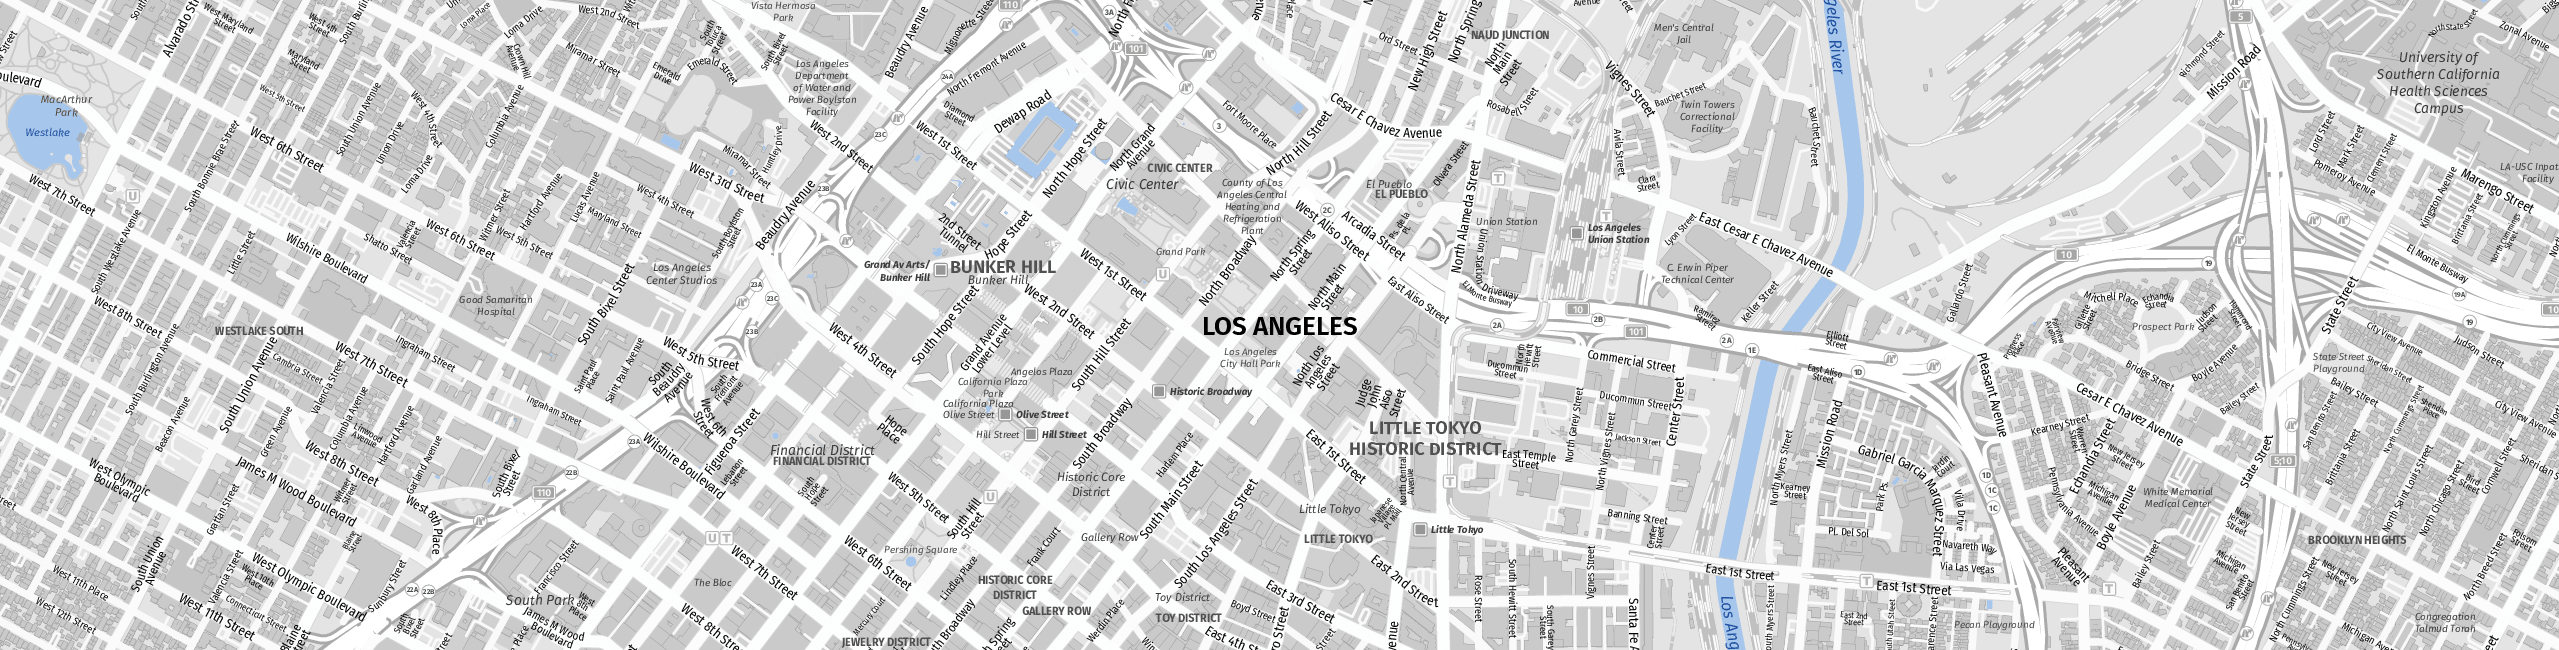 Stadtplan Los Angeles zum Downloaden.